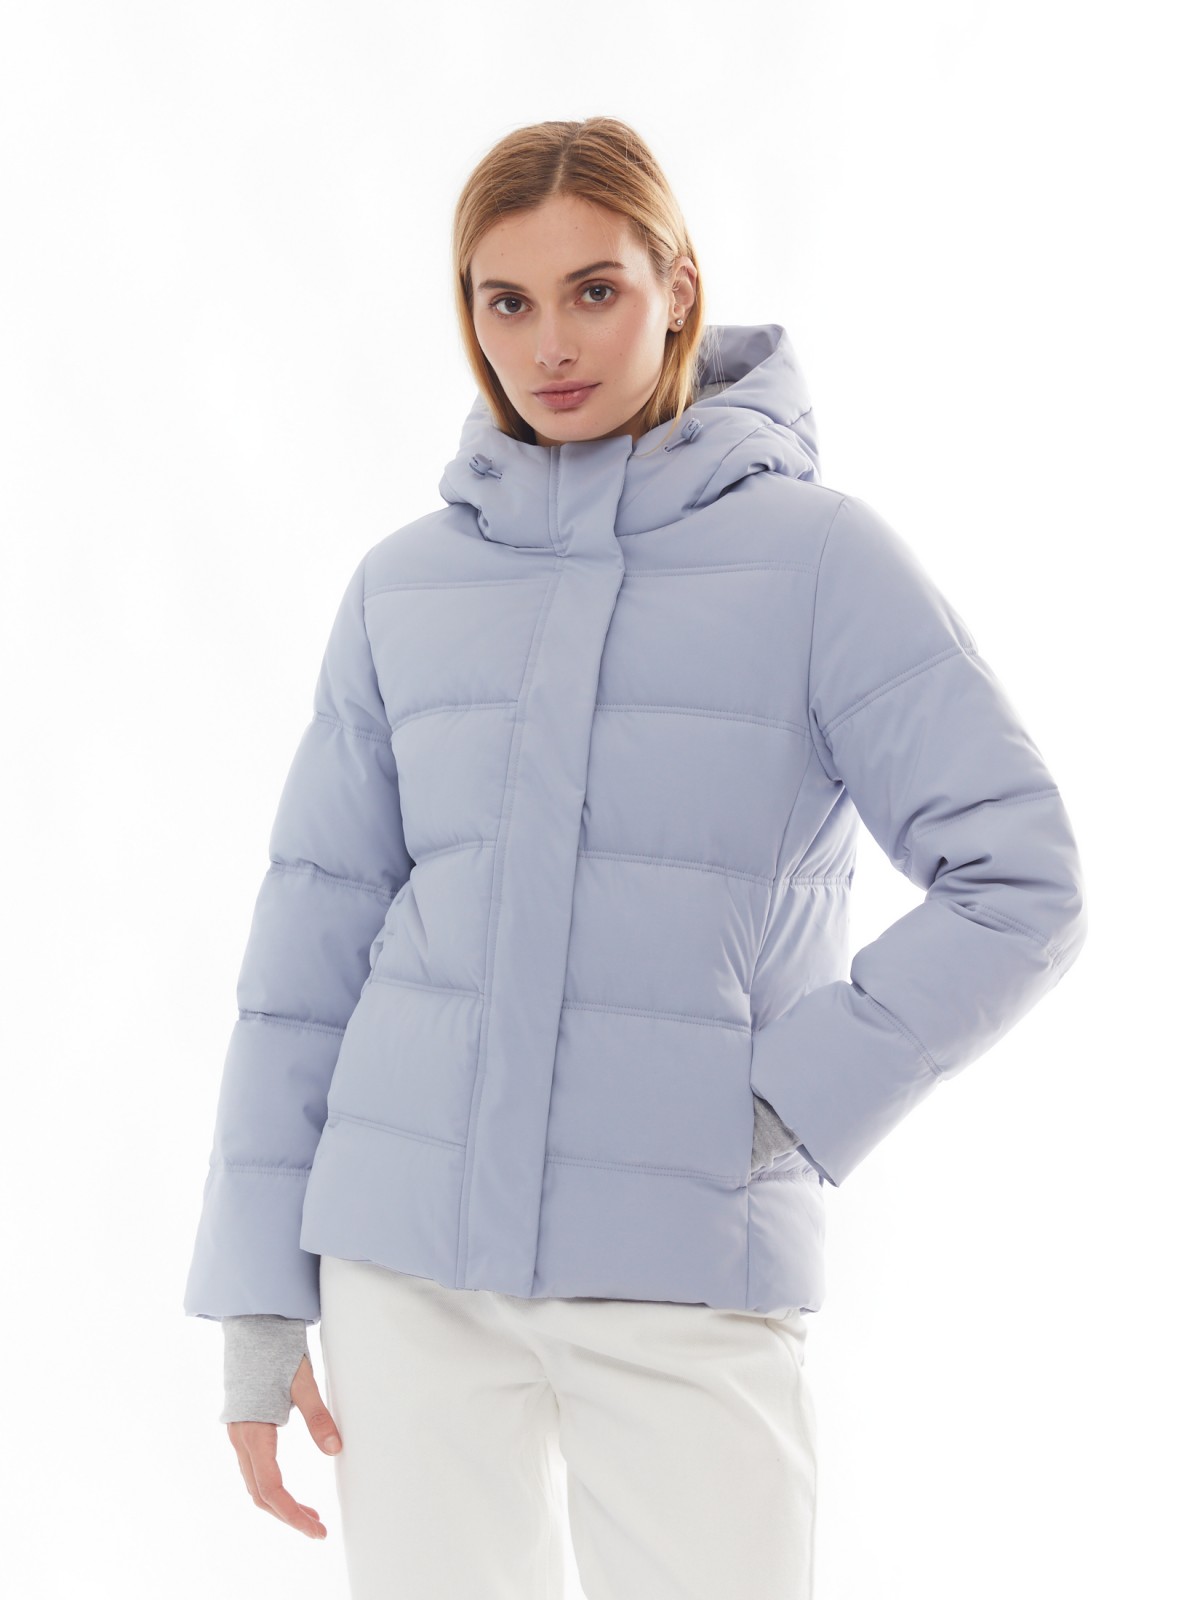 Утеплённая стёганая куртка укороченного фасона с капюшоном zolla 024125102064, цвет светло-голубой, размер XS - фото 3